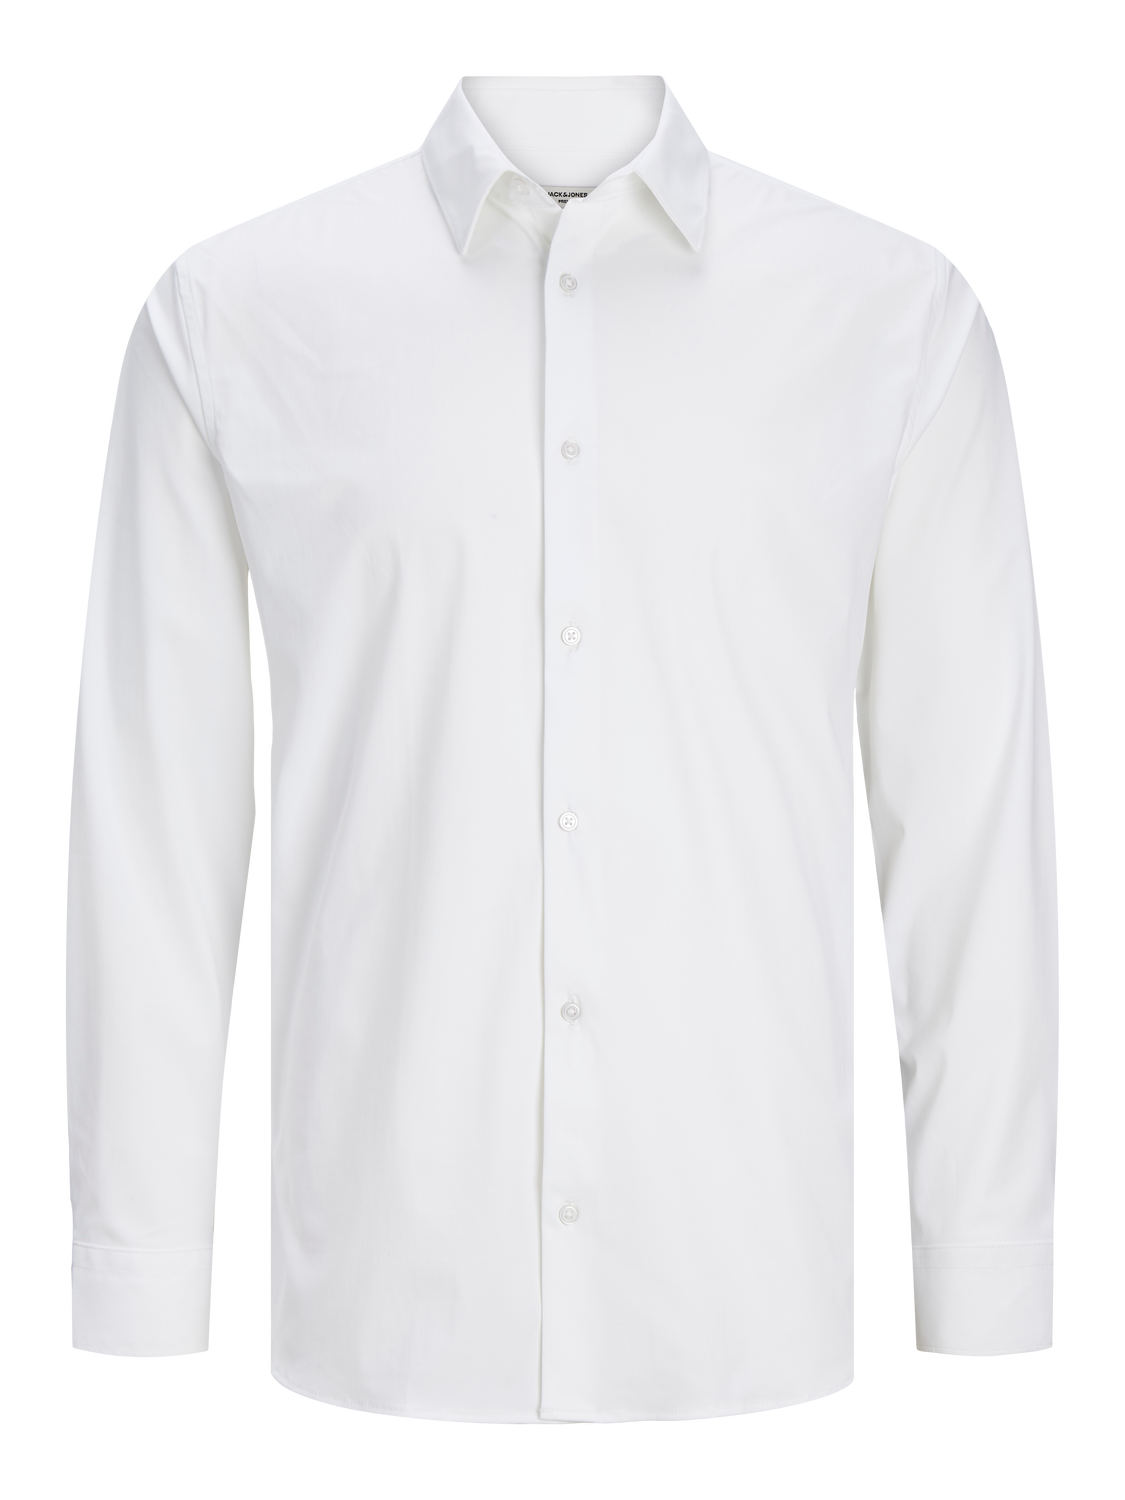 JPRBLAACTIVE Shirts - White